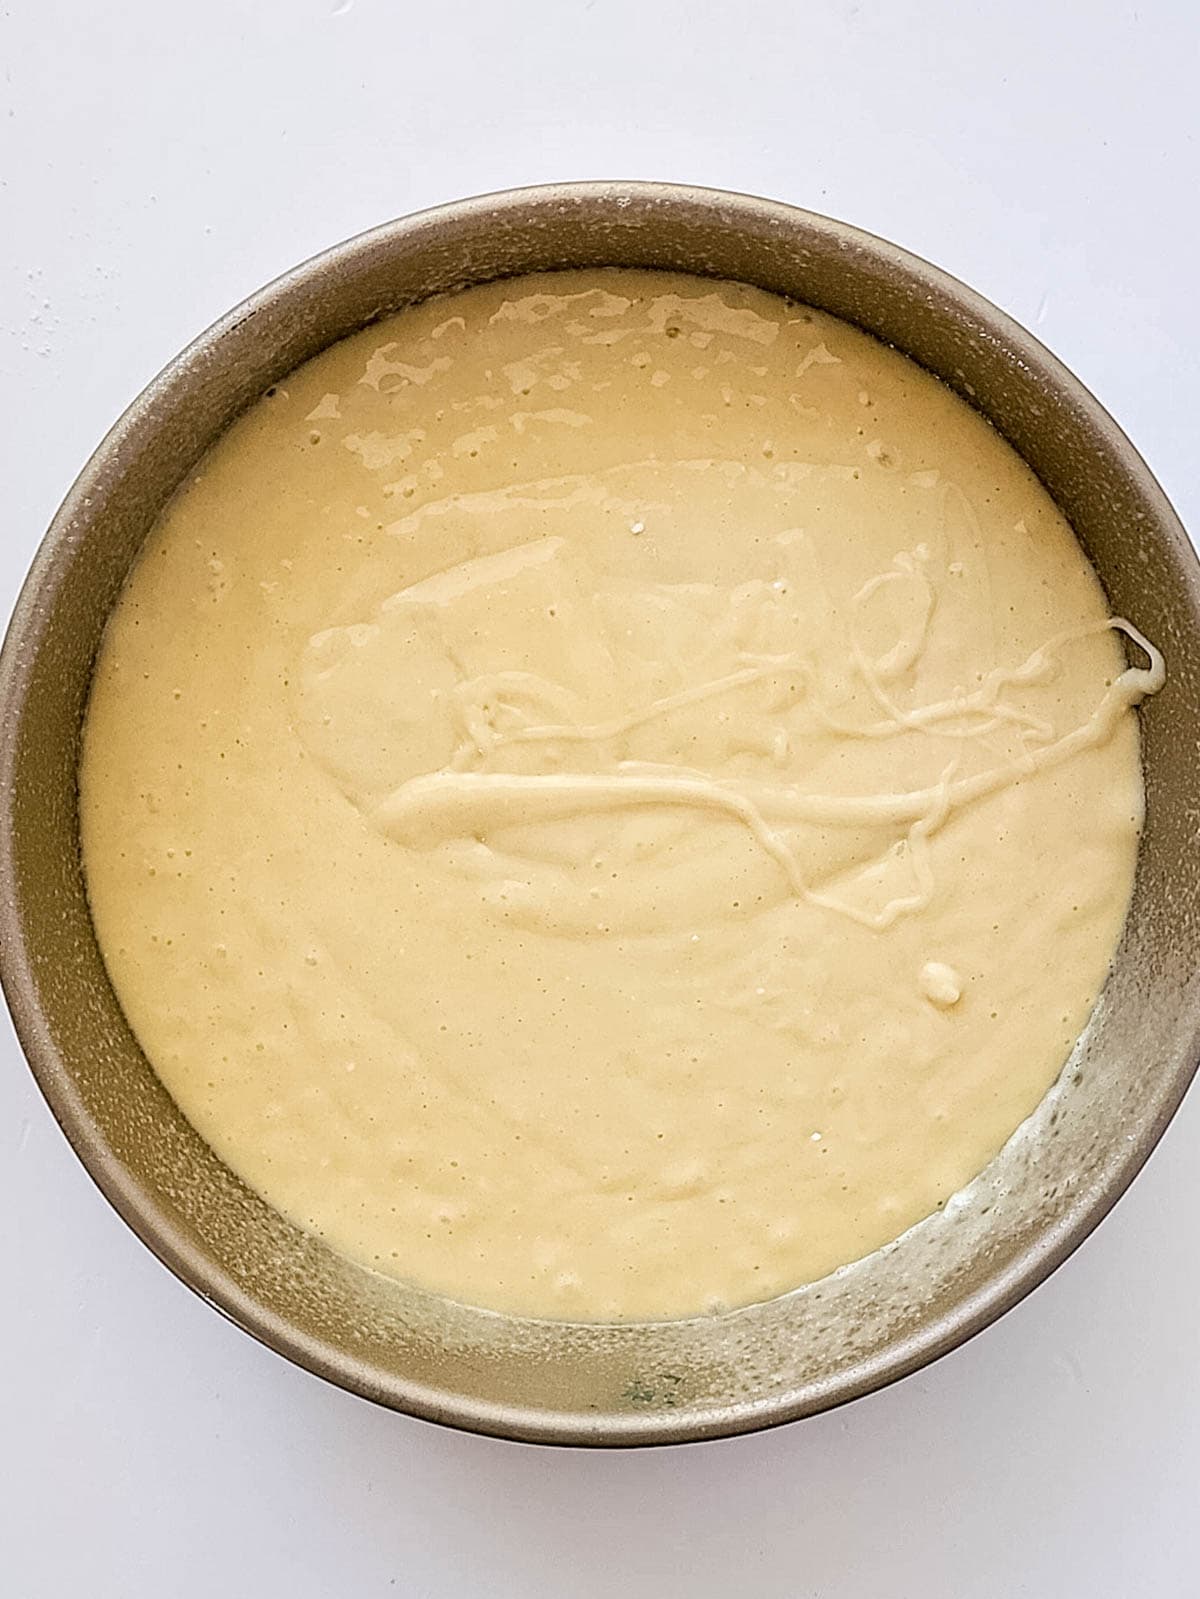 Cake batter in cake pan